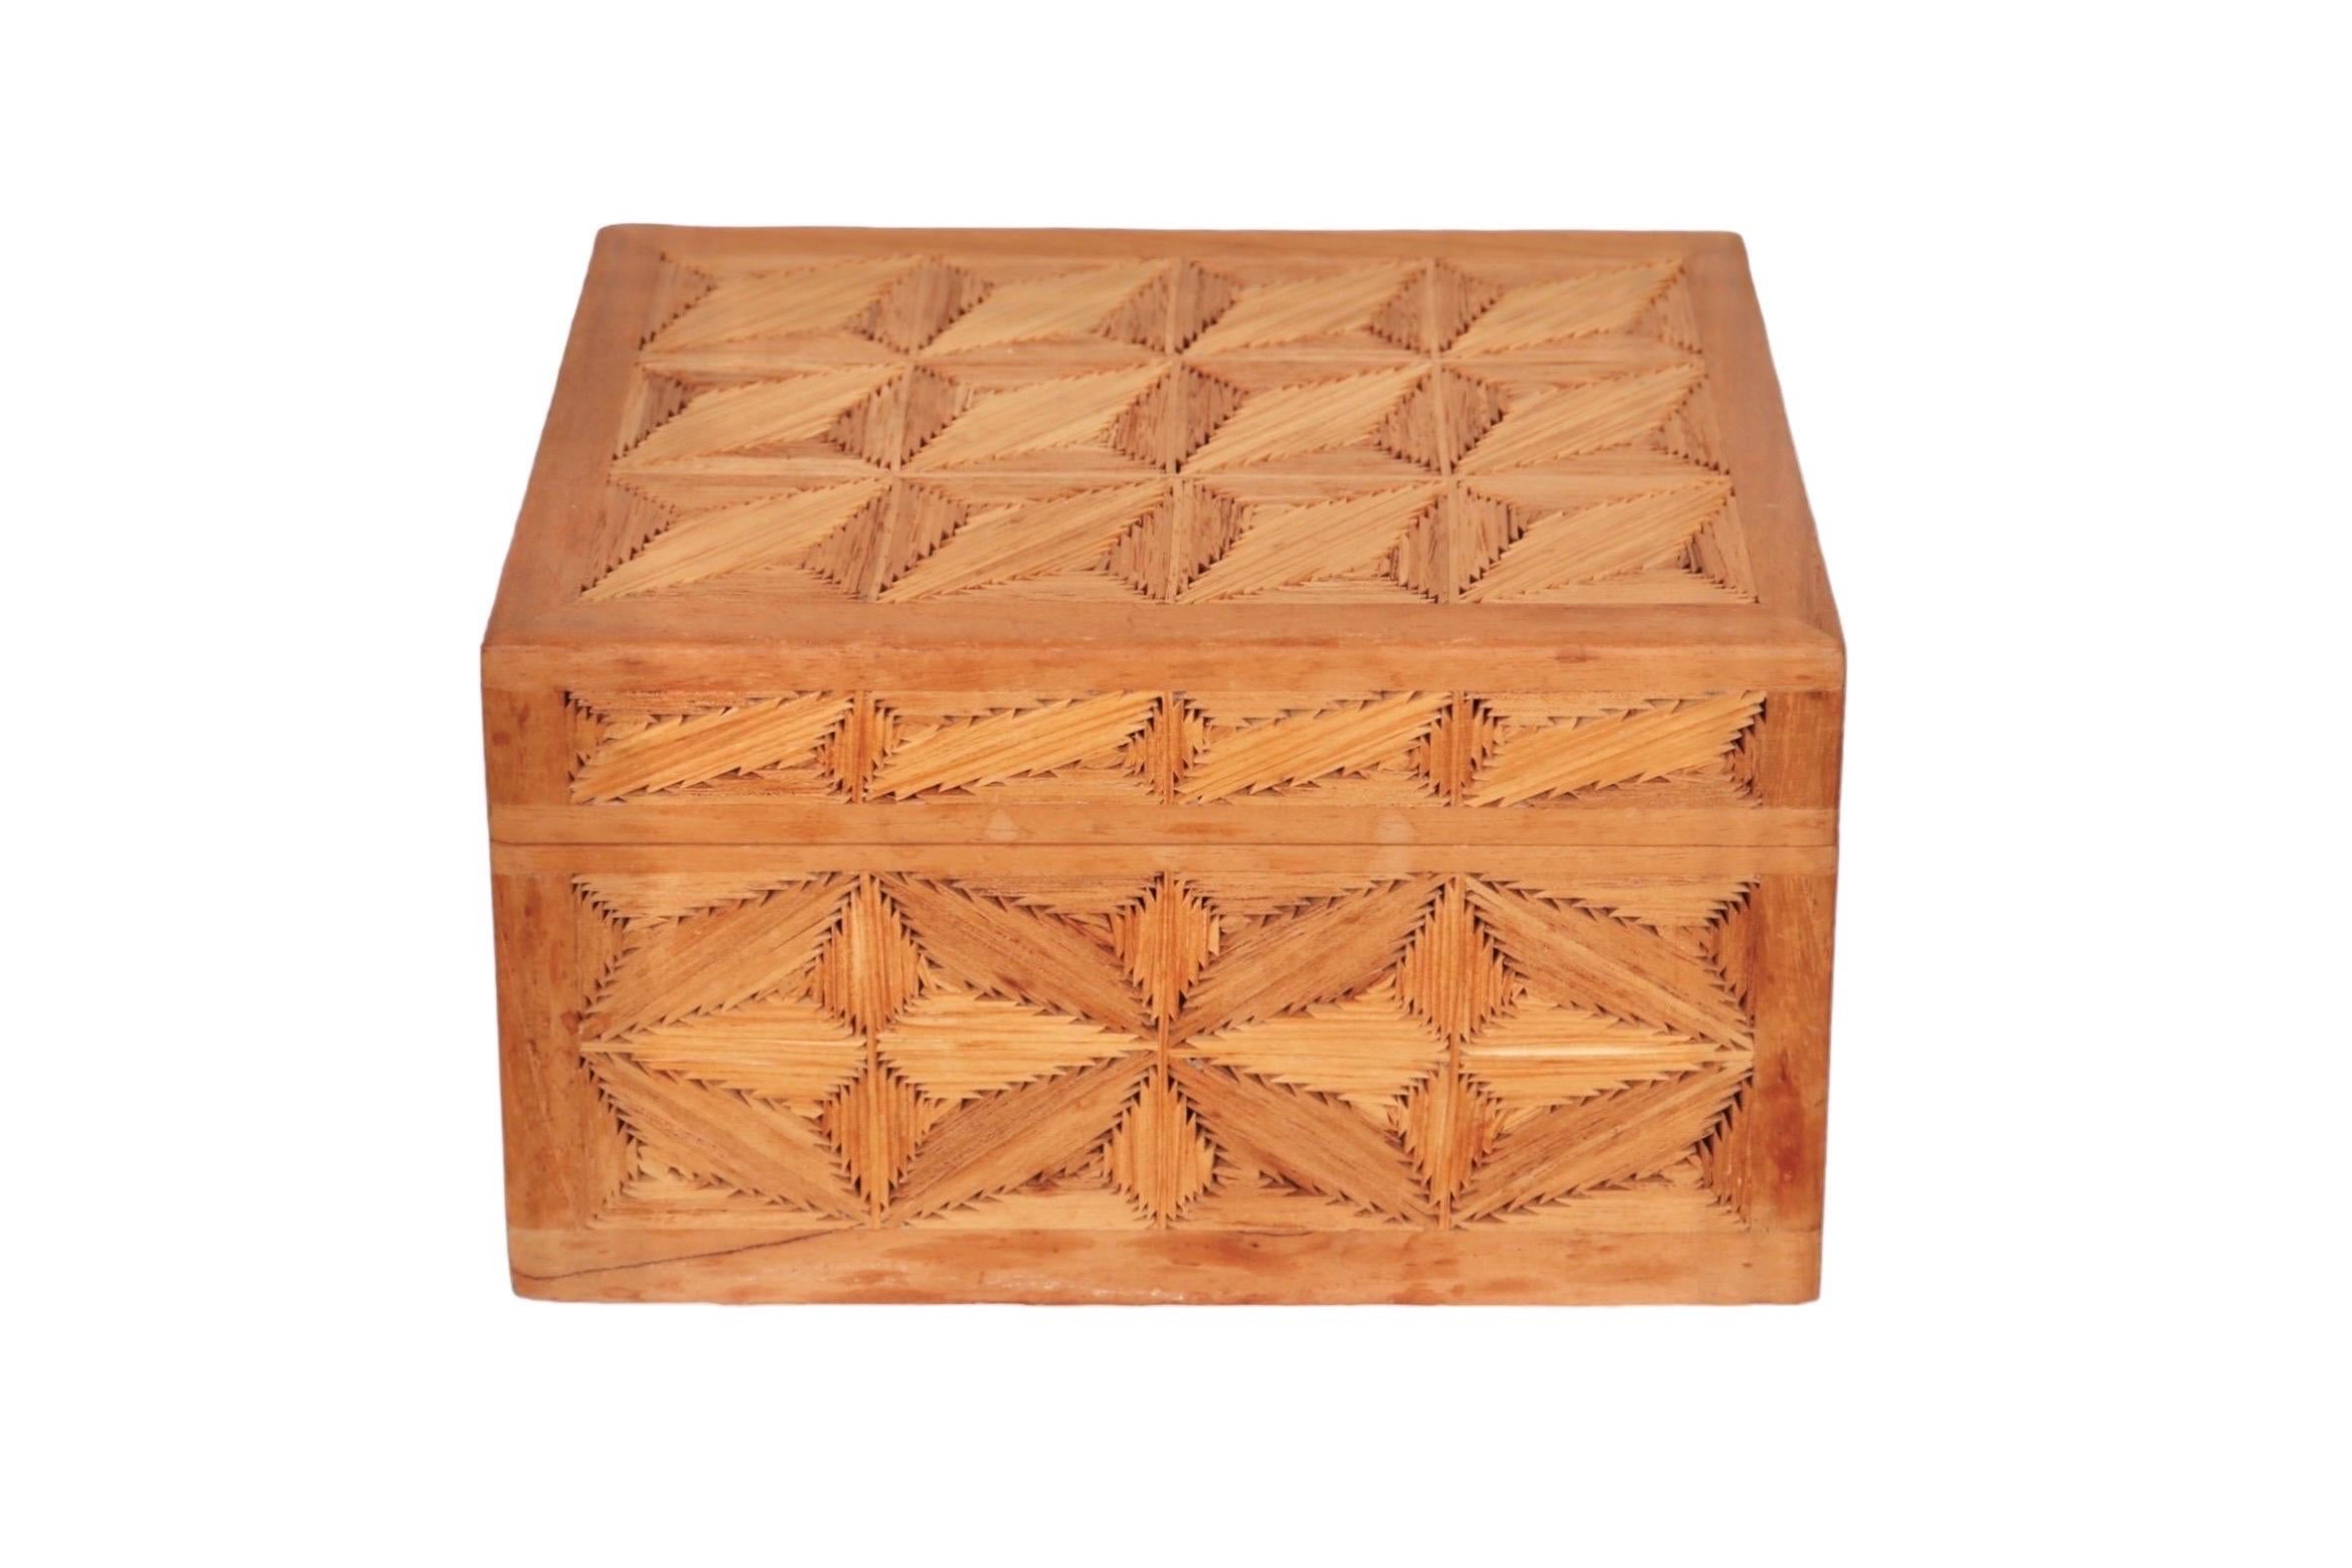 Boîte à bibelots en bois fabriquée à la main. Chaque face est incrustée de losanges de bois opposés, constitués de lamelles de bois inclinées pour créer un motif géométrique simple. Le couvercle s'ouvre à l'aide de deux charnières. 